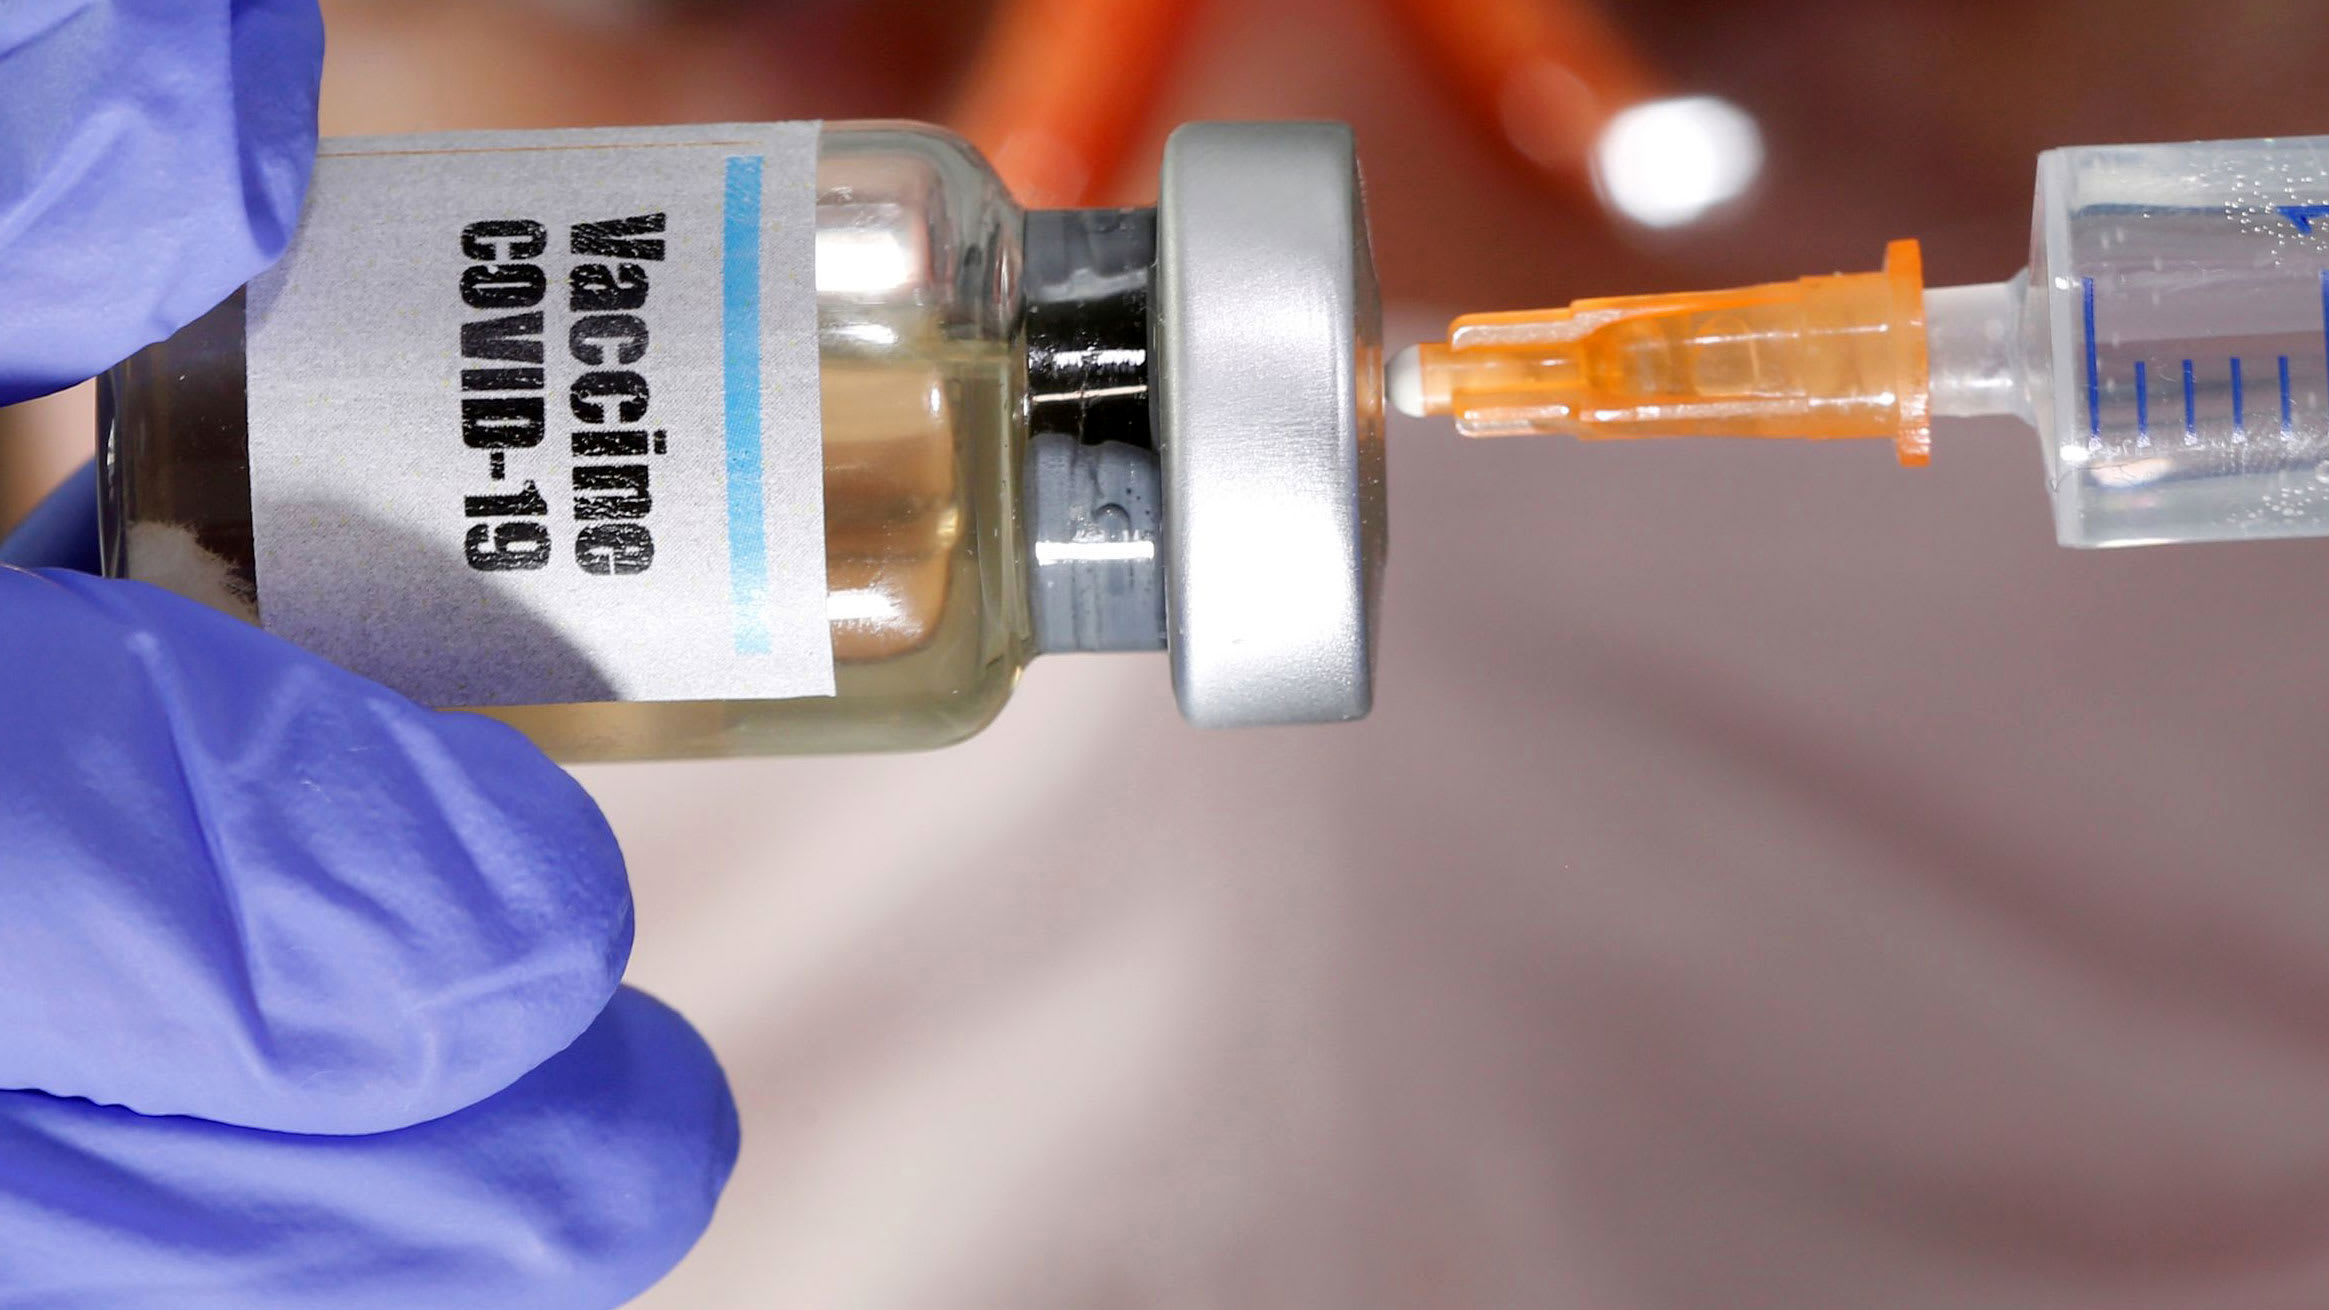 دومین واکسن کرونای روسیه در آستانه تایید